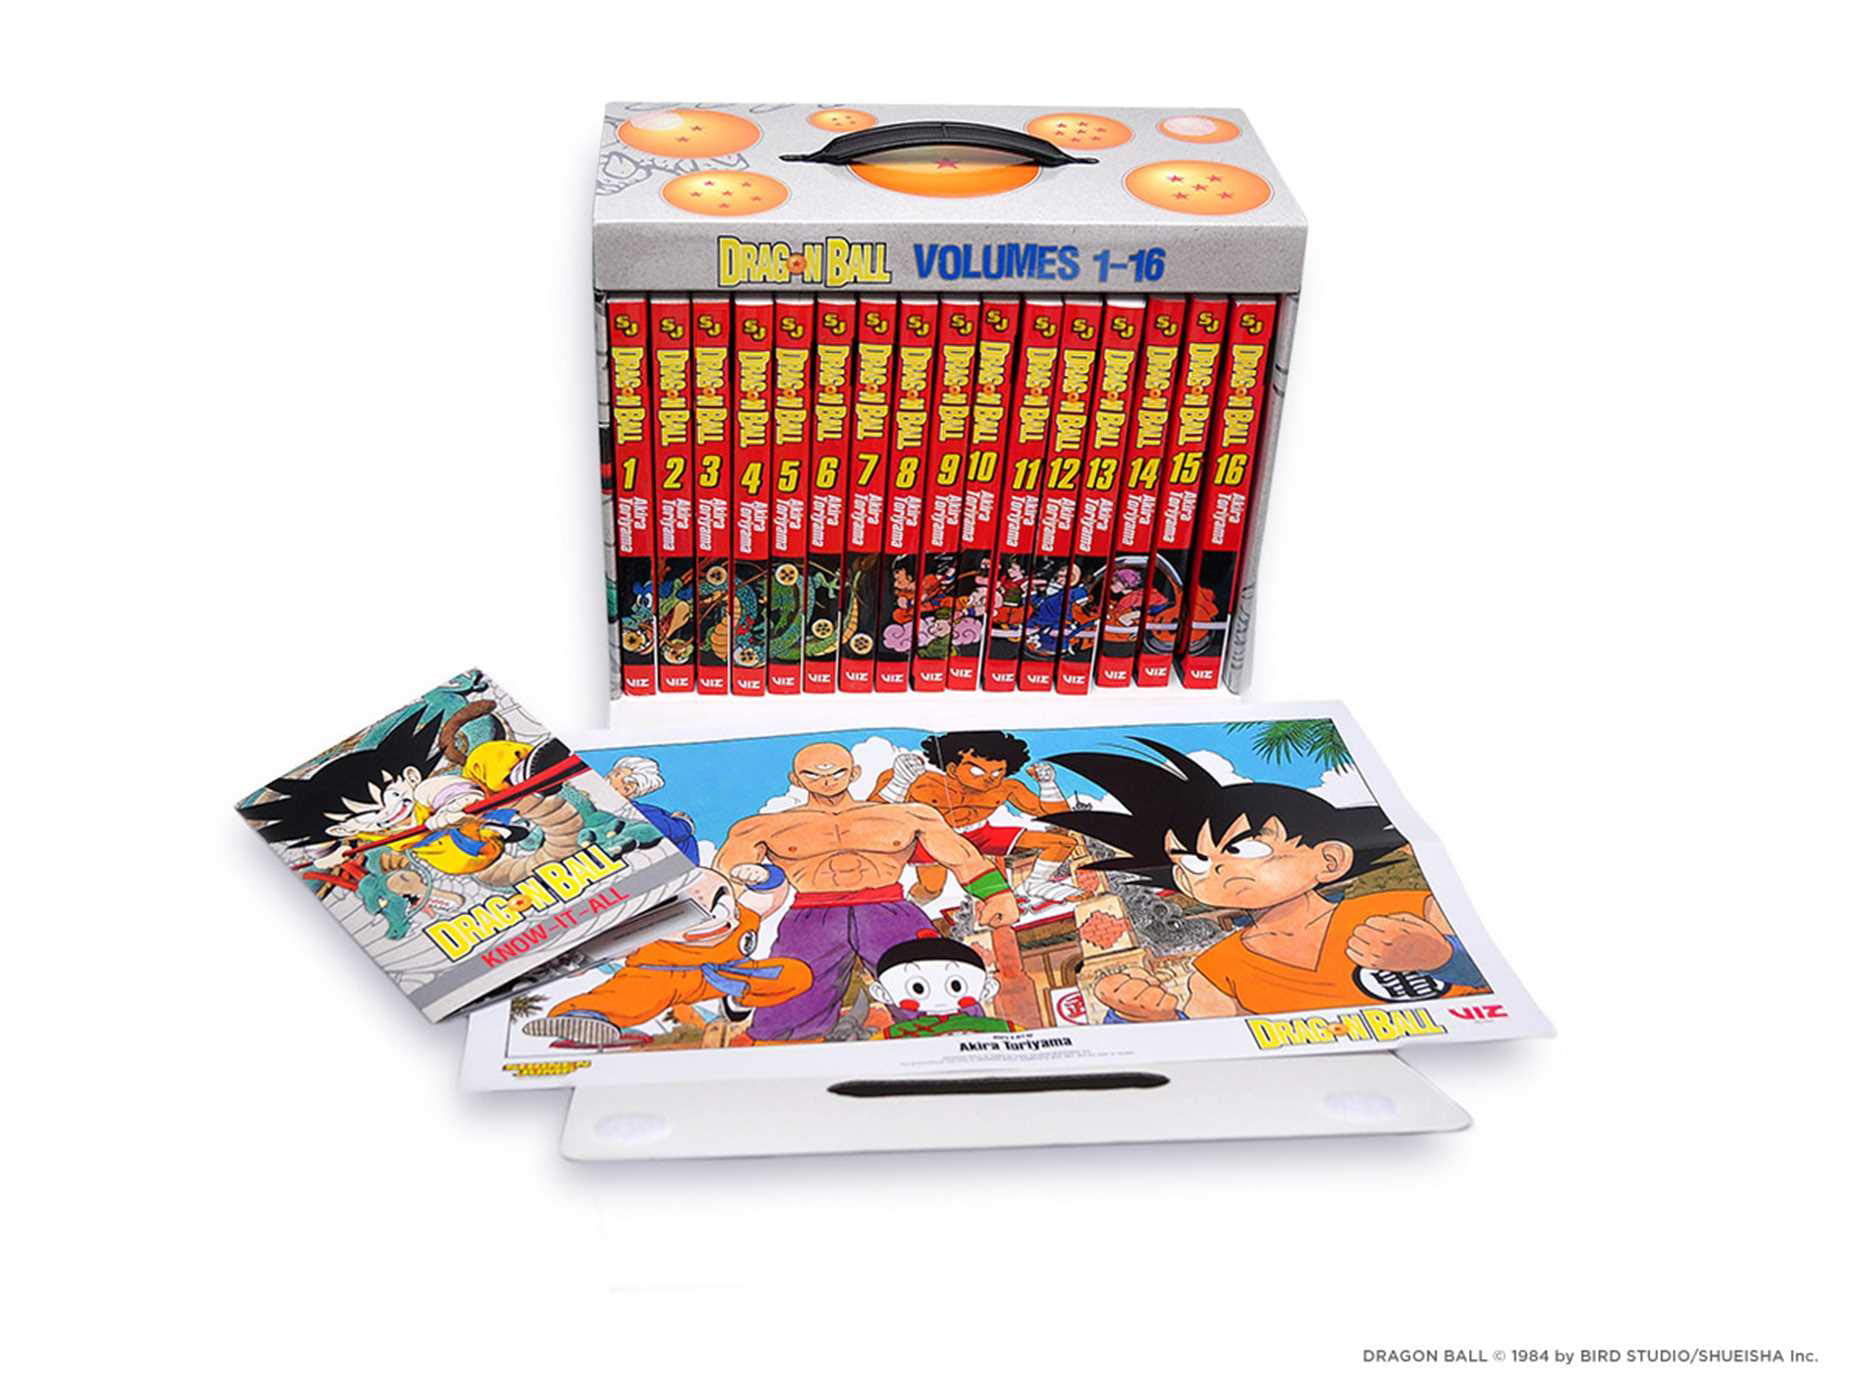 Dragon Ball and Dragon Ball Z Manga, YOU PICK! DB vol. 1-16, DBZ vol. 1-2,  Viz